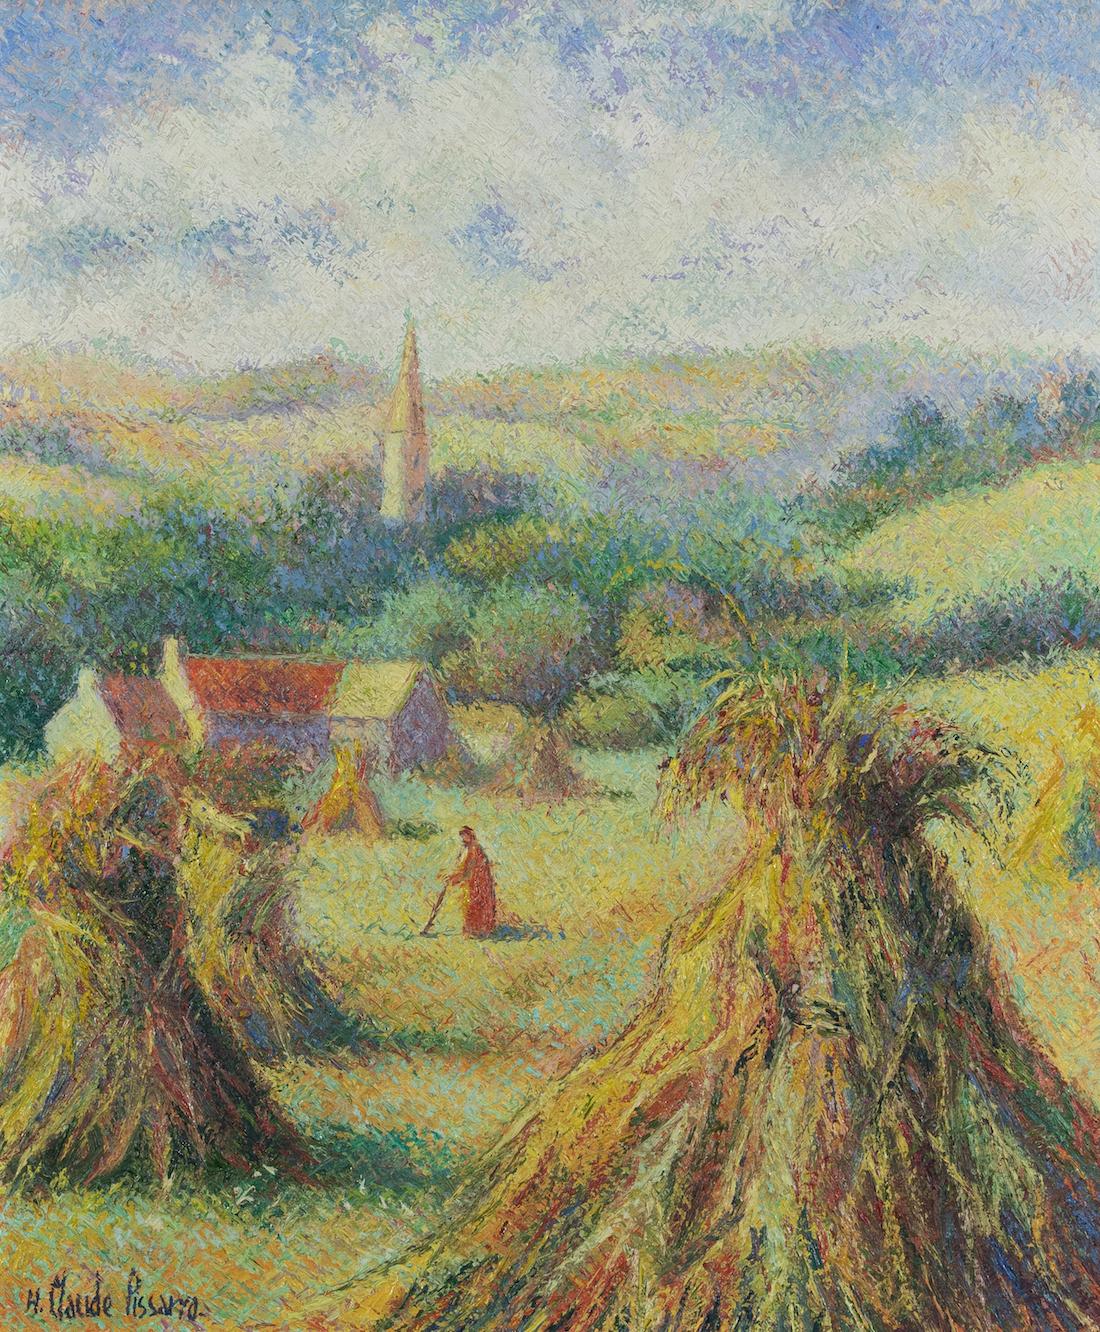 Moisson à Saint-Omer by H. Claude Pissarro - Landscape oil painting